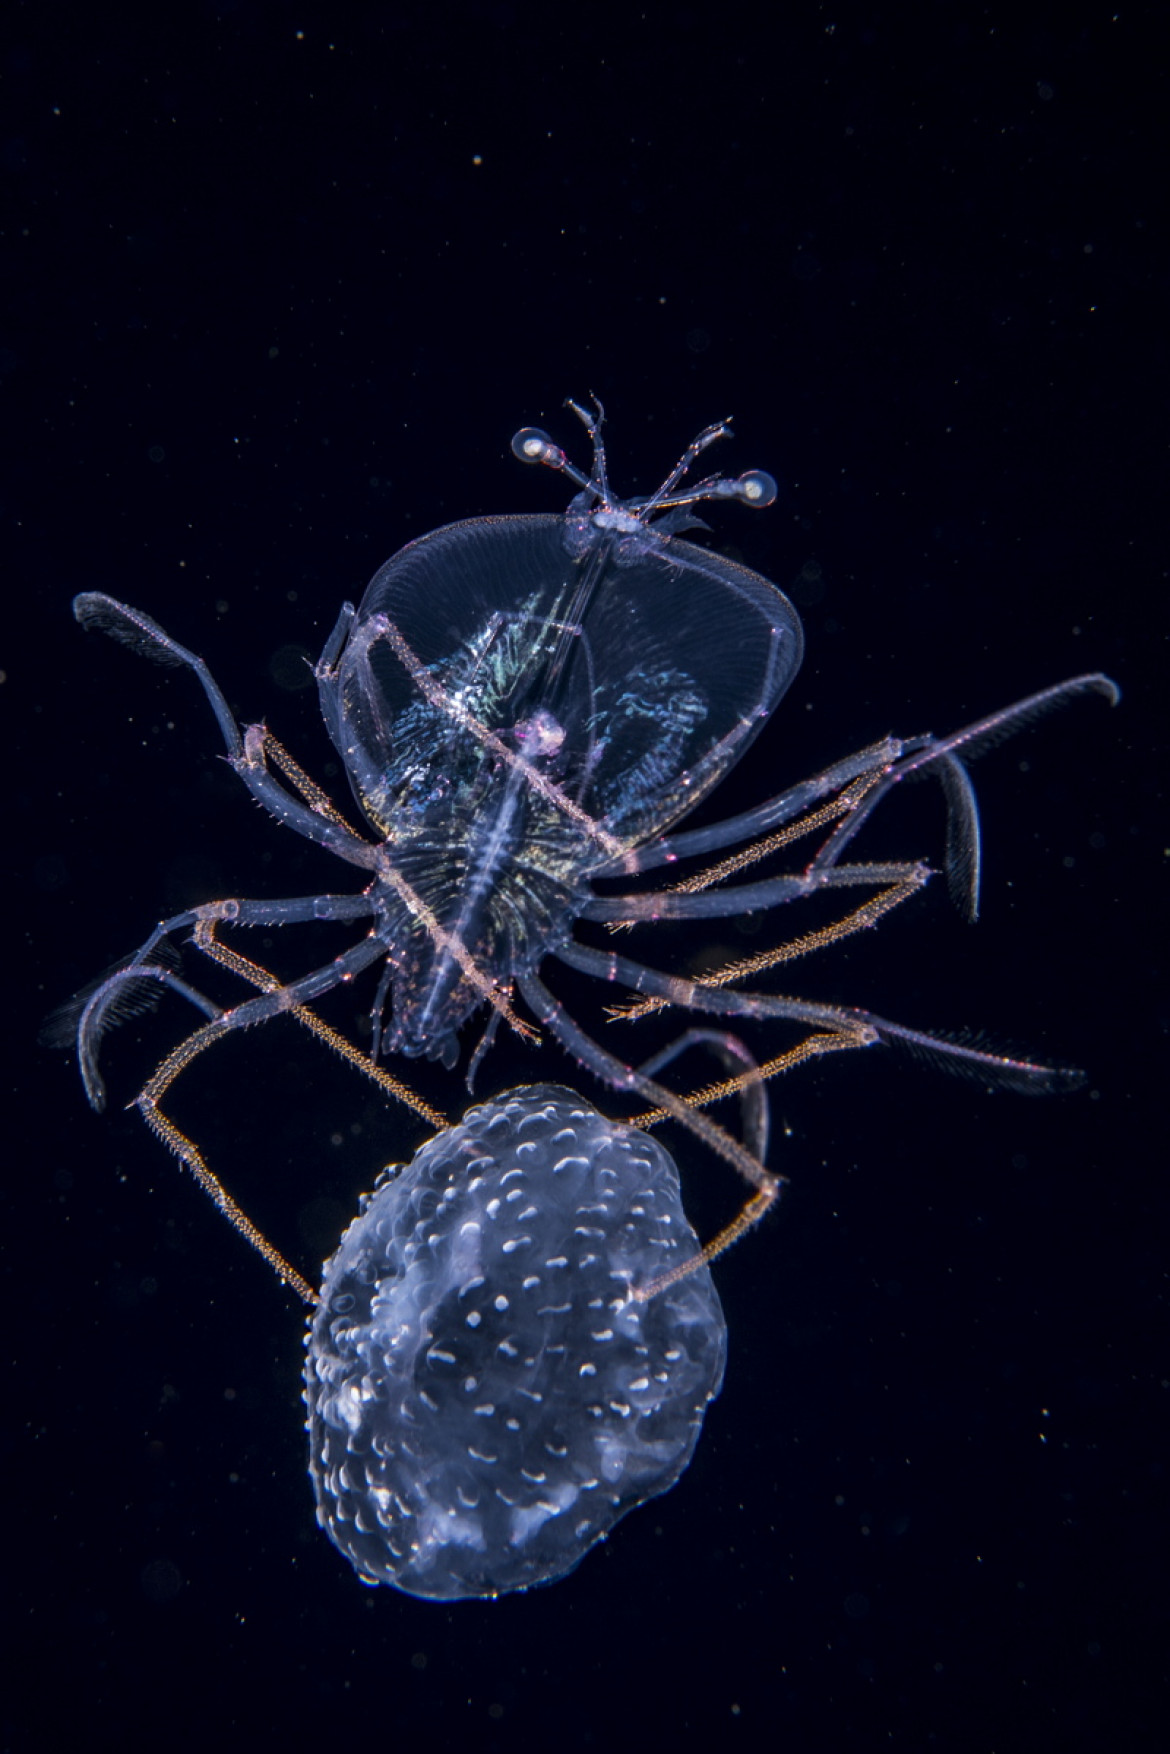 fot. Anthony Berberian, "The Jellyfish Jockey", 1. miejsce w kategorii Pod Wodą.

Larwa homara żeruje na meduzie